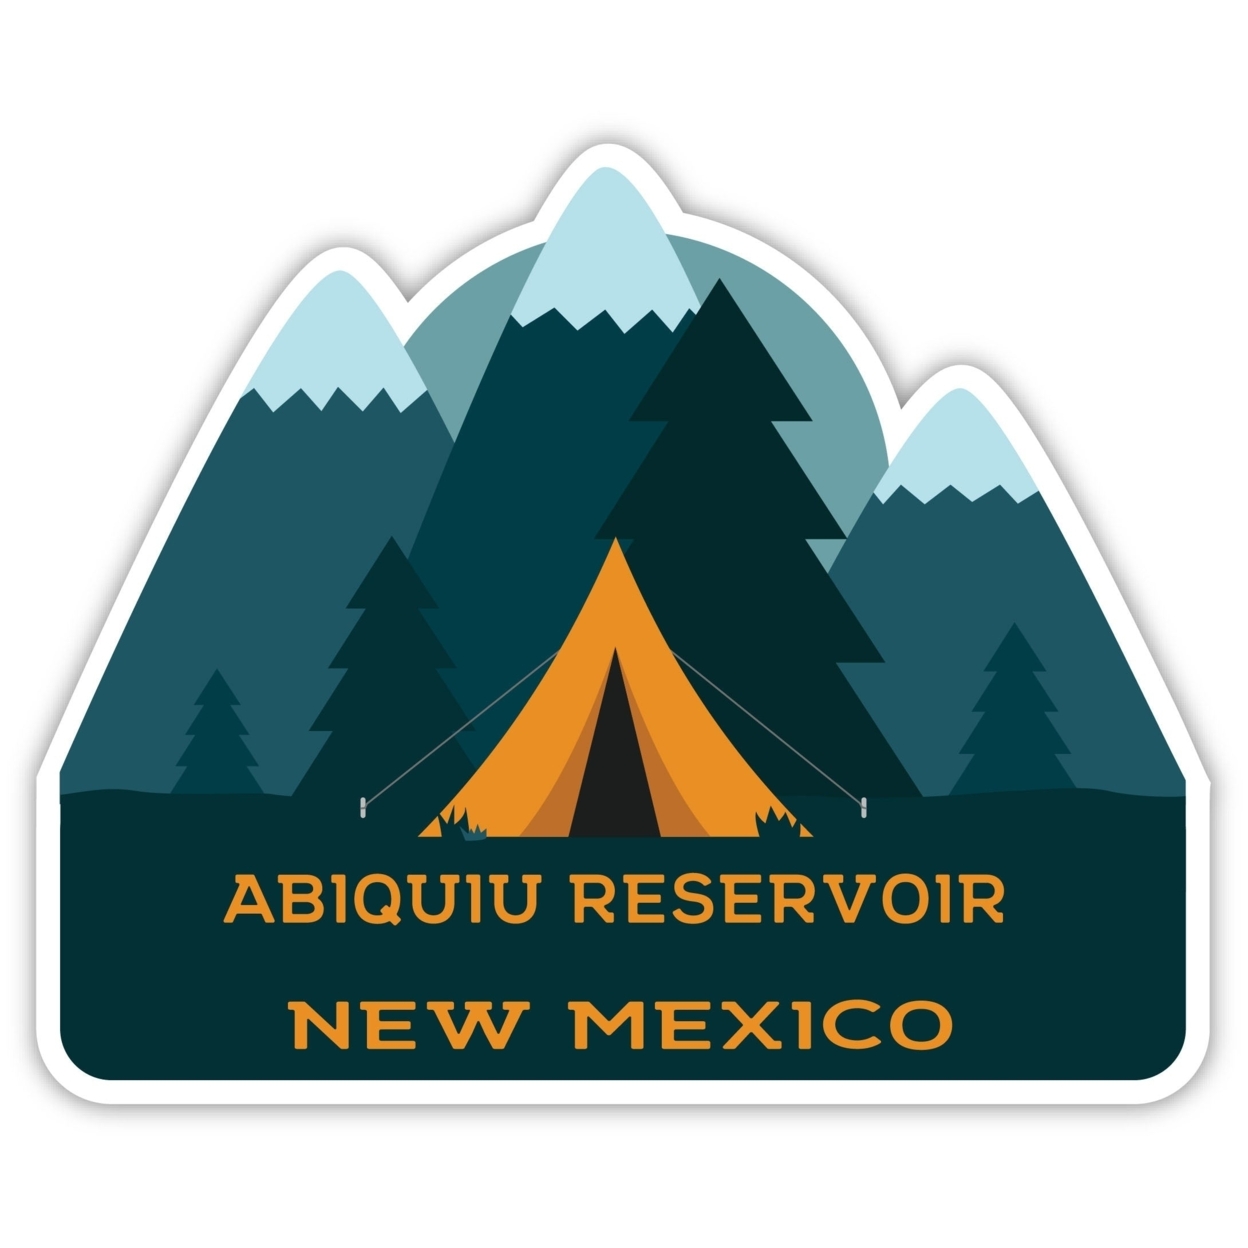 Abiquiu Reservoir New Mexico Souvenir Decorative Stickers (Choose Theme And Size) - Single Unit, 2-Inch, Tent